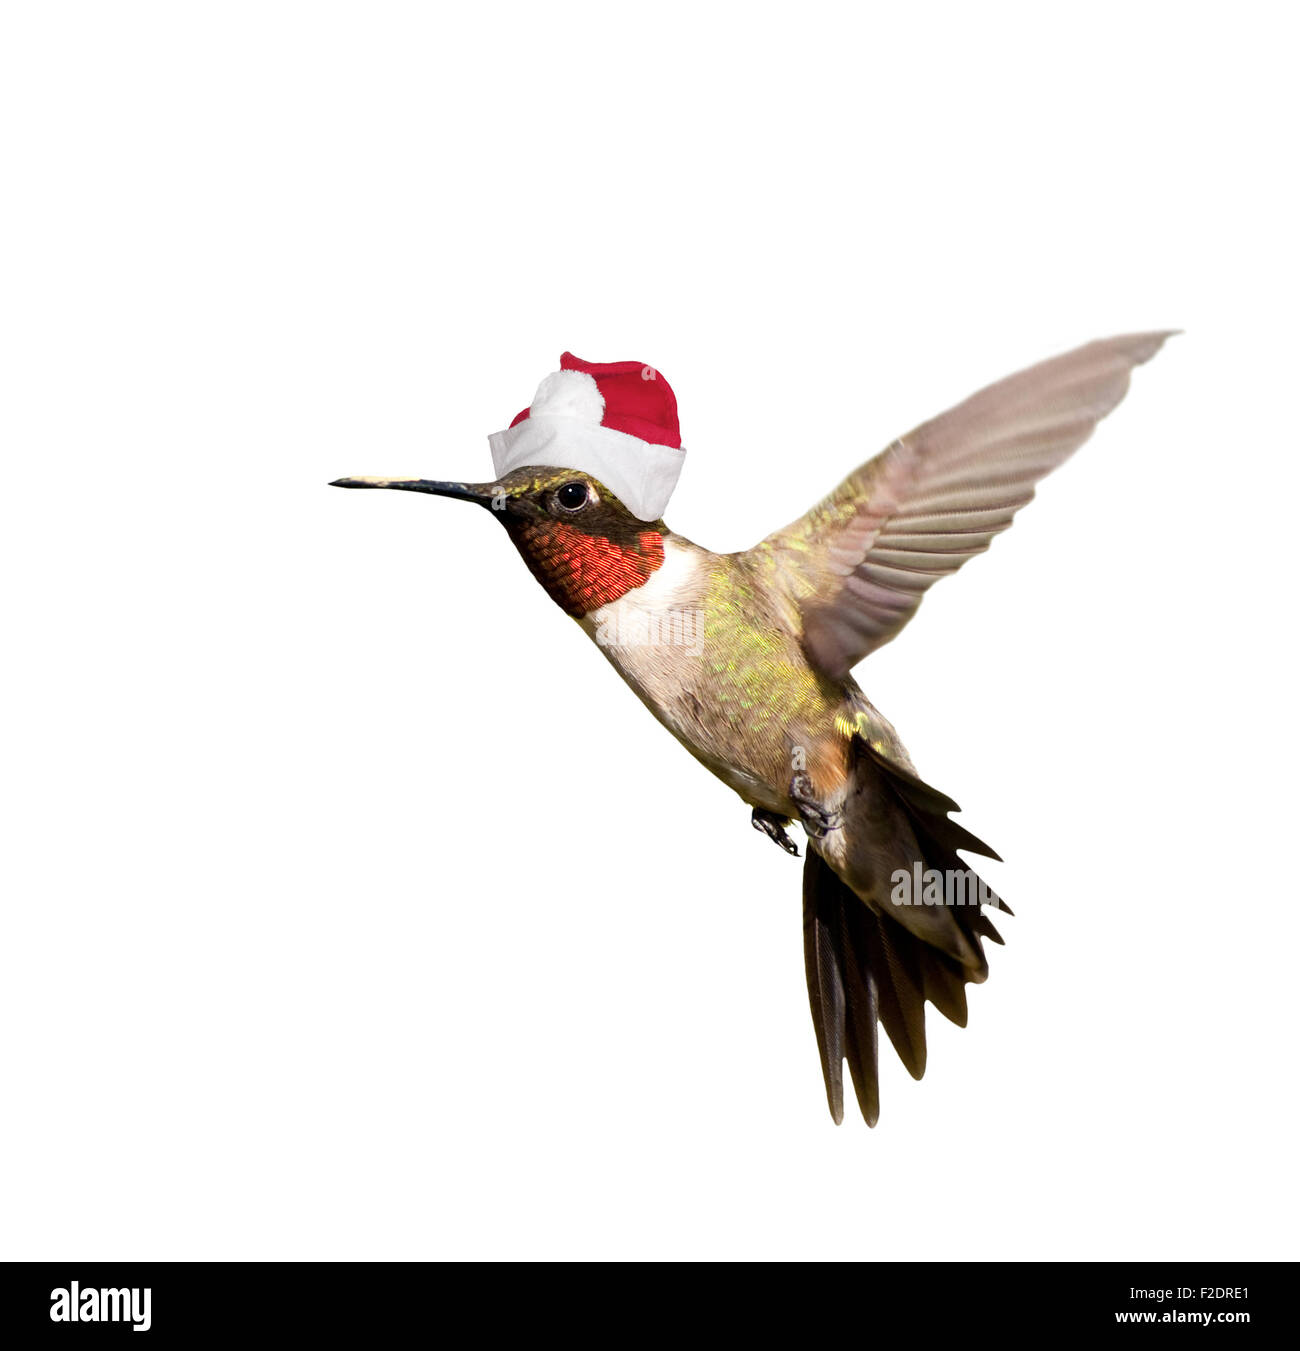 Hummingbird with Santa hat célébrer Noël, isolé sur fond blanc Banque D'Images